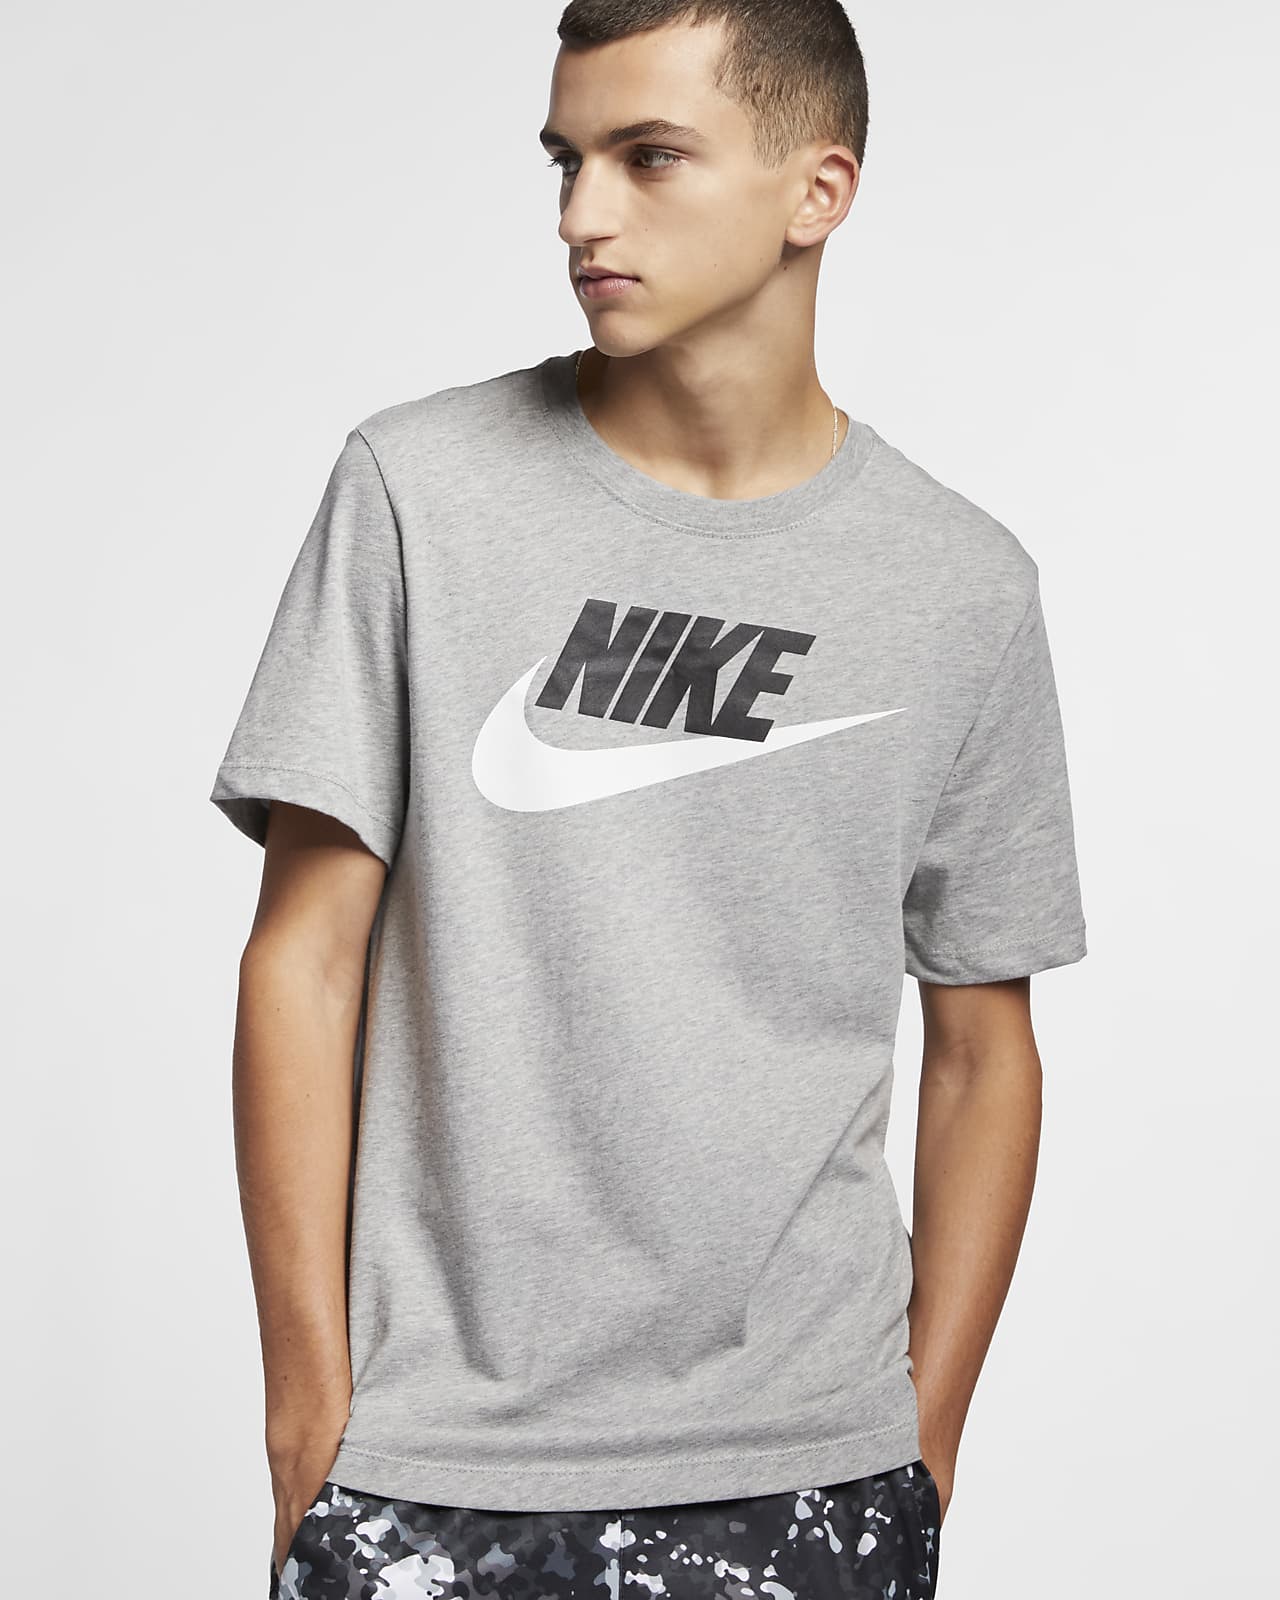 Nike Sportswear - Hombre. Nike ES